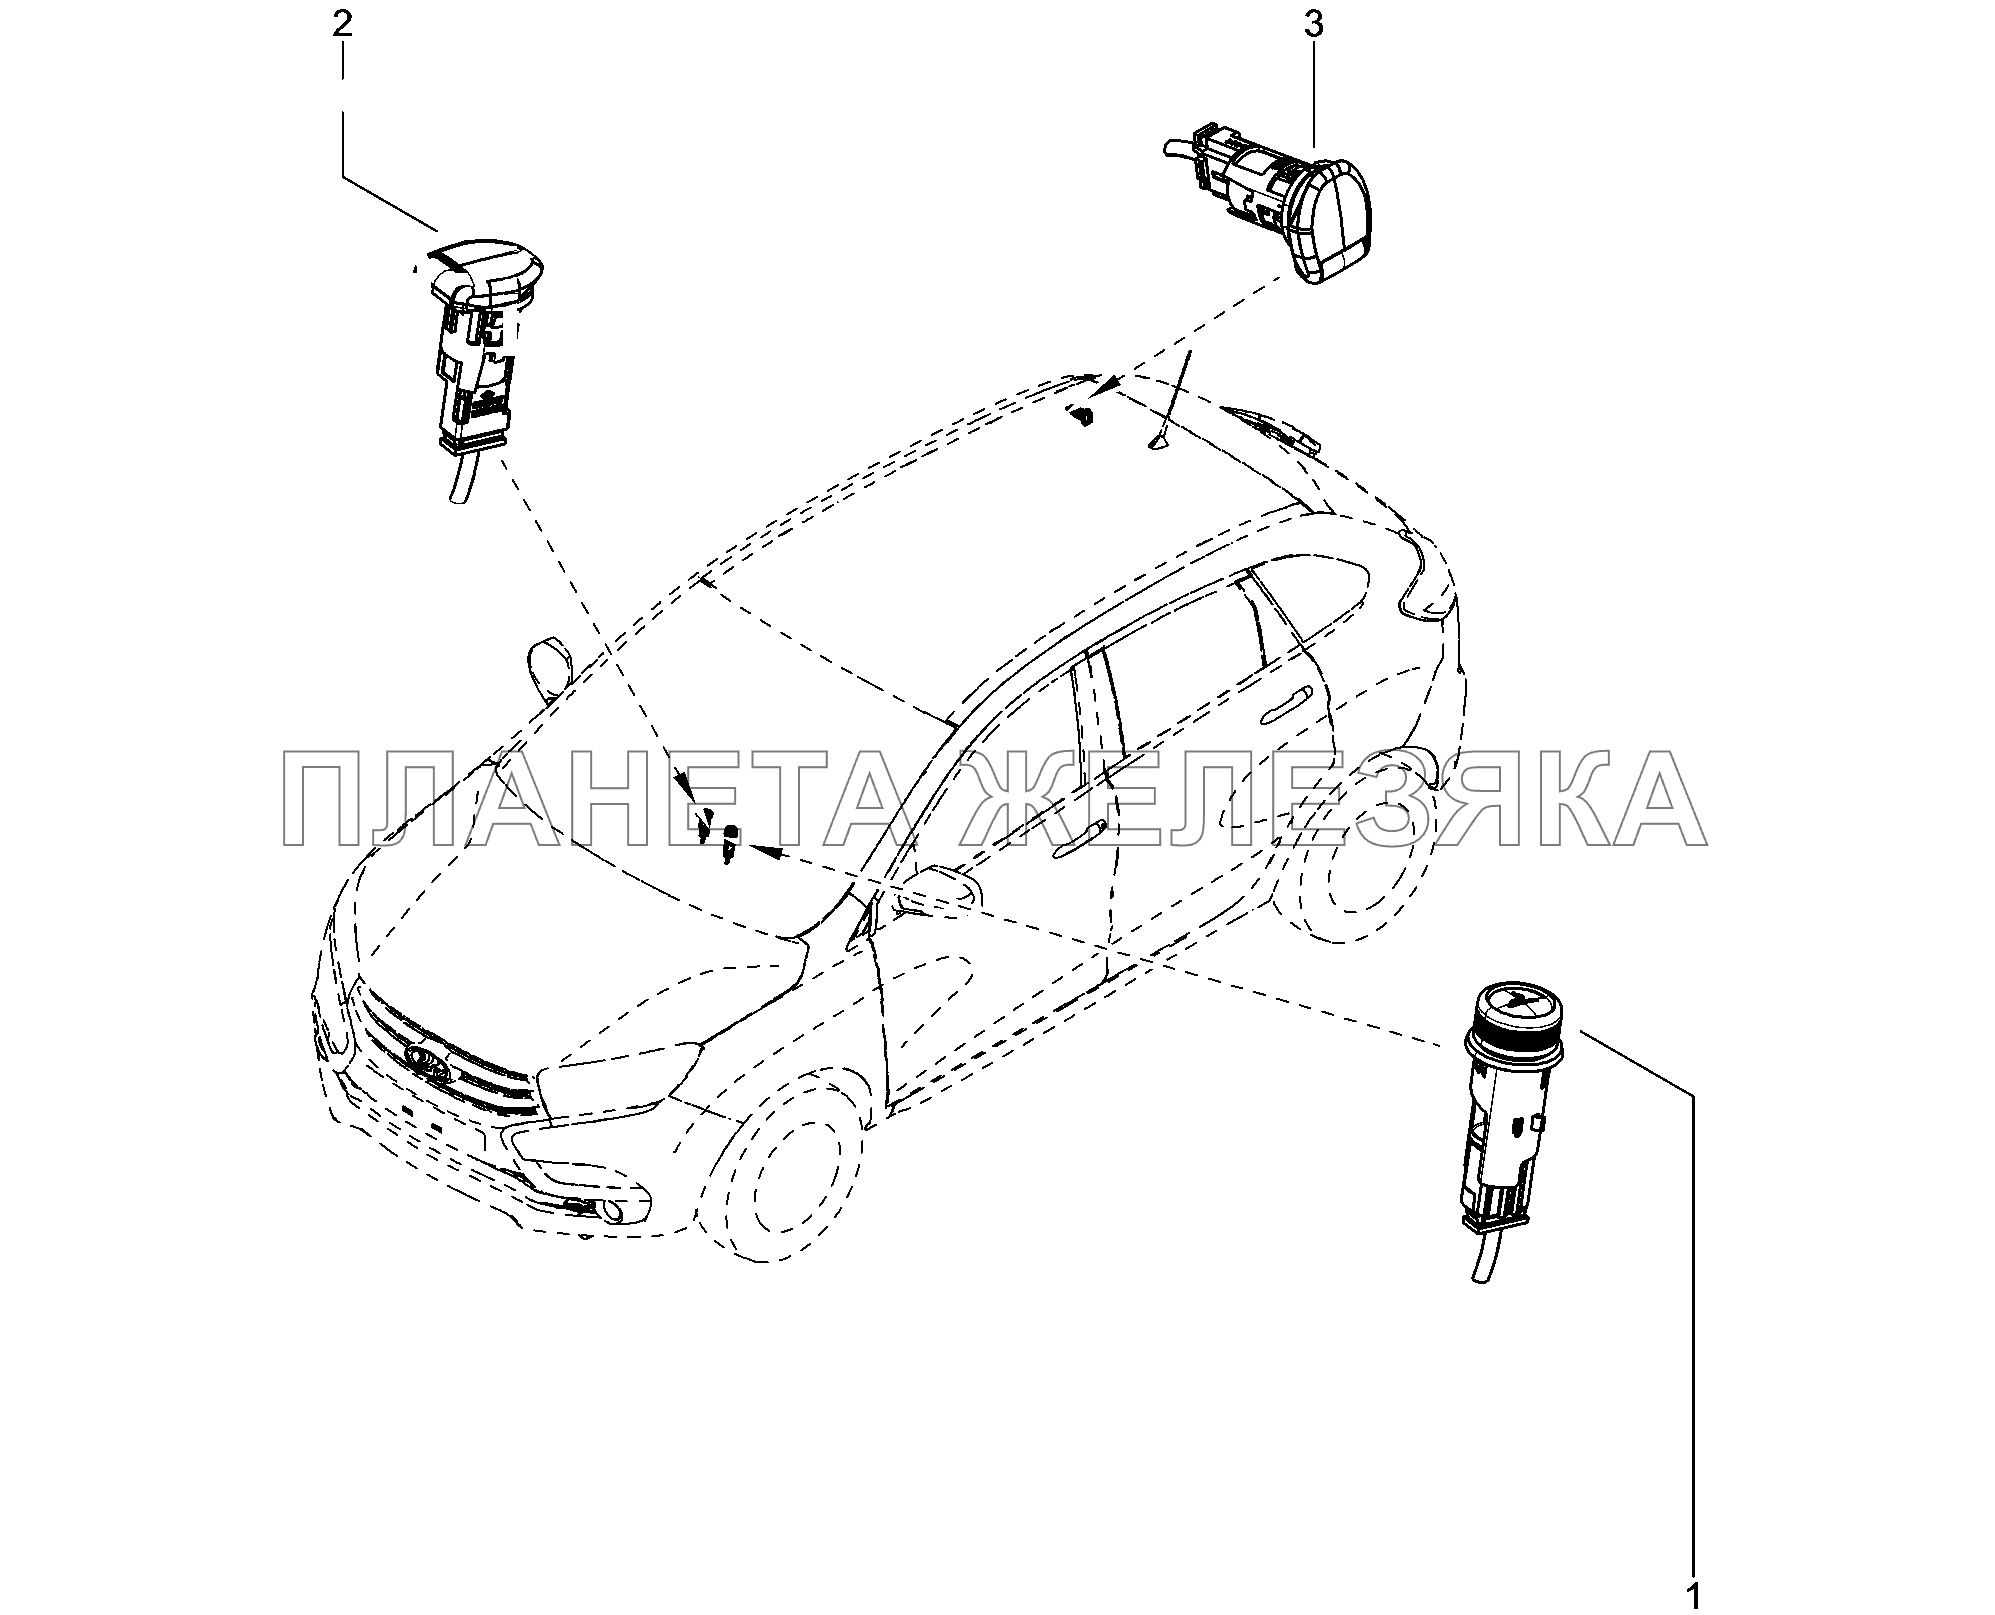 843010. Прикуриватель Lada Xray